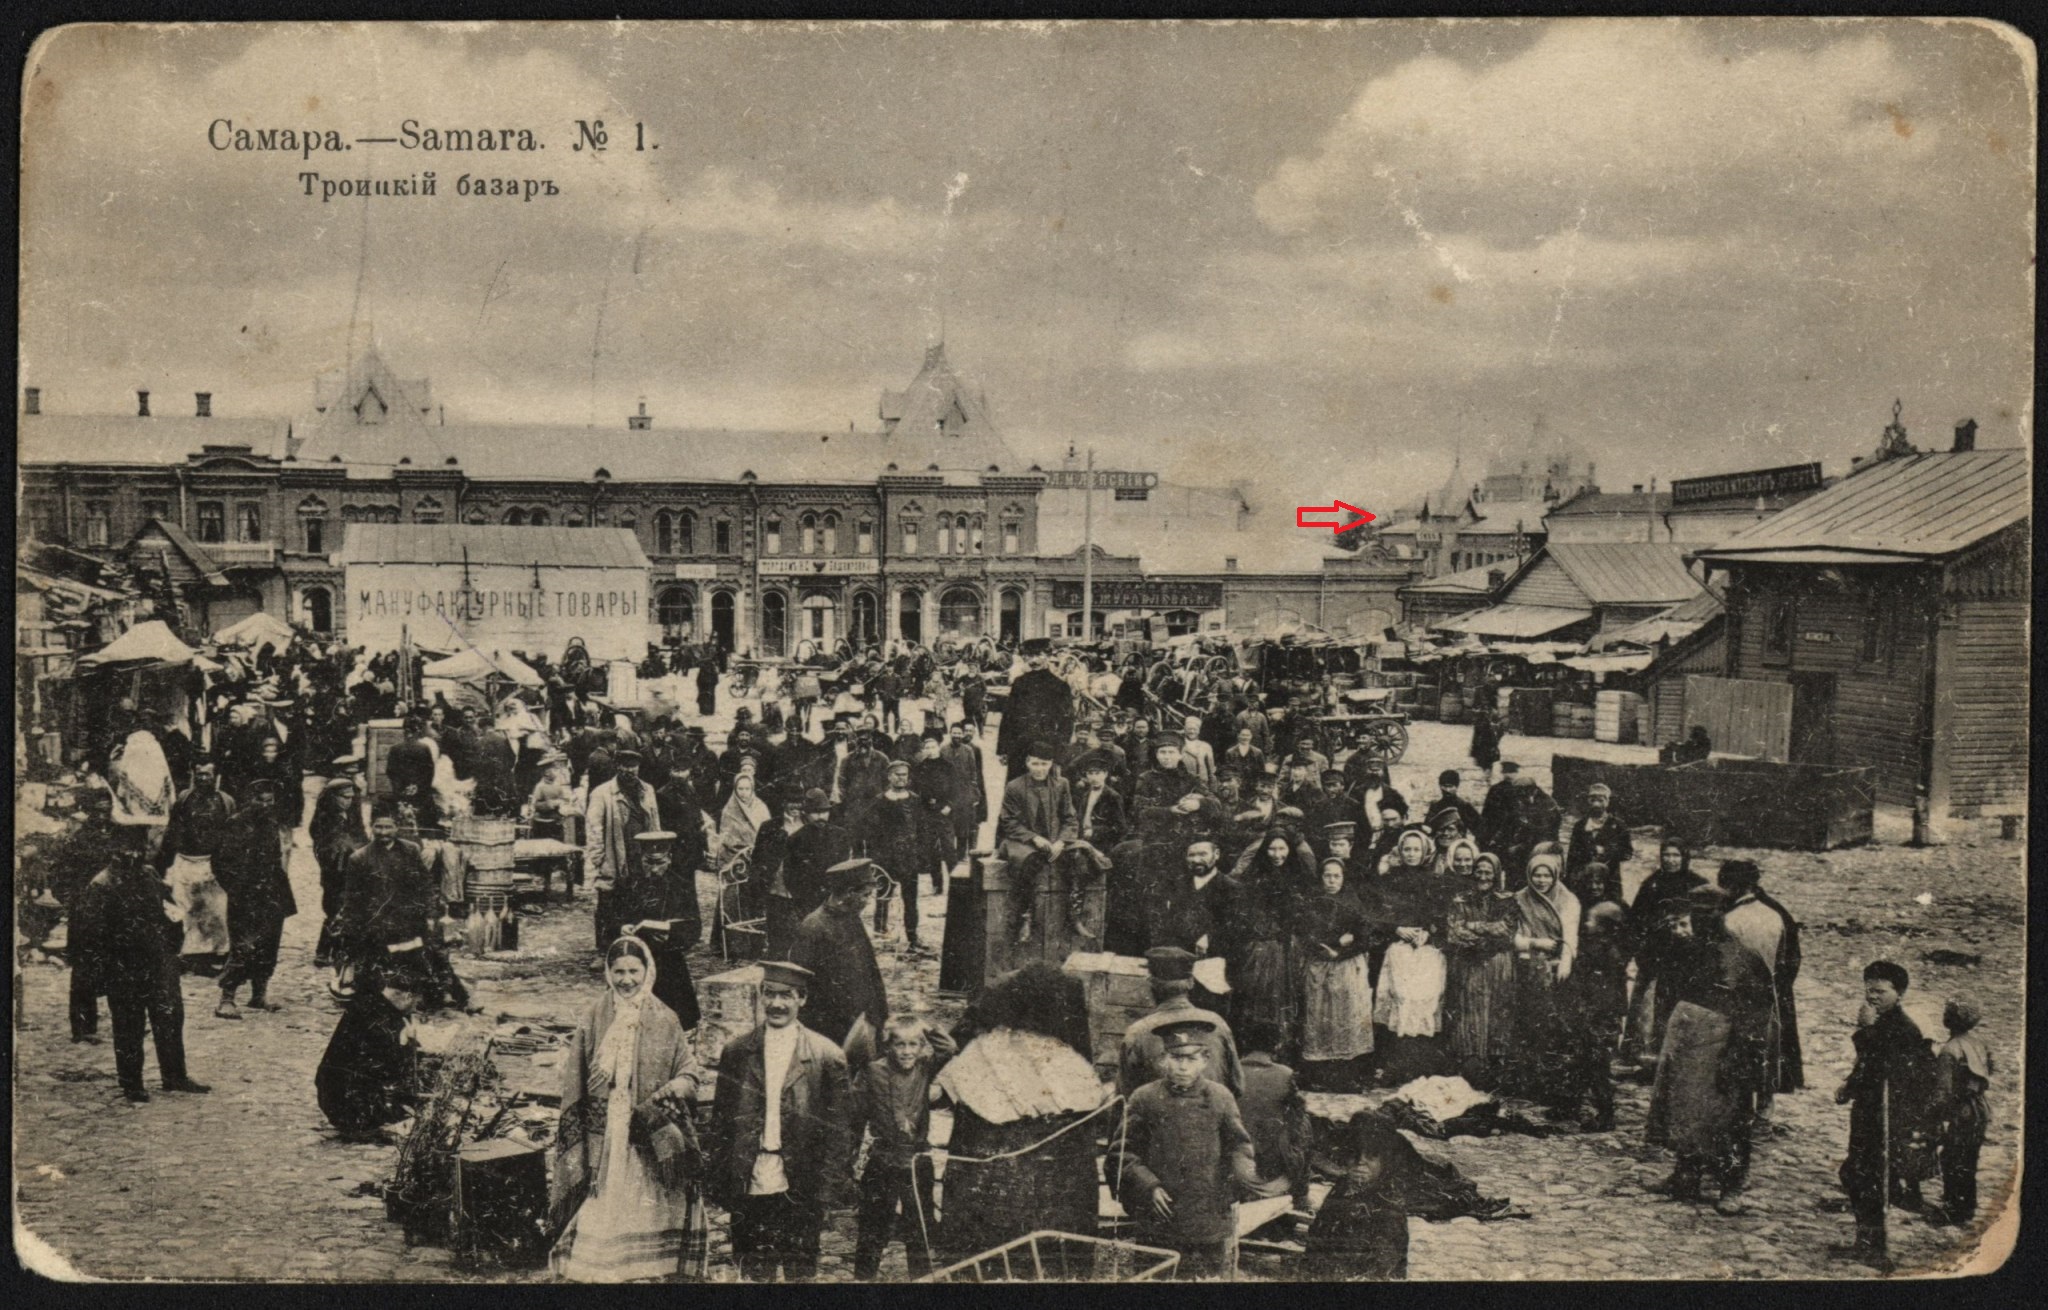 Троицкий базар в Самаре